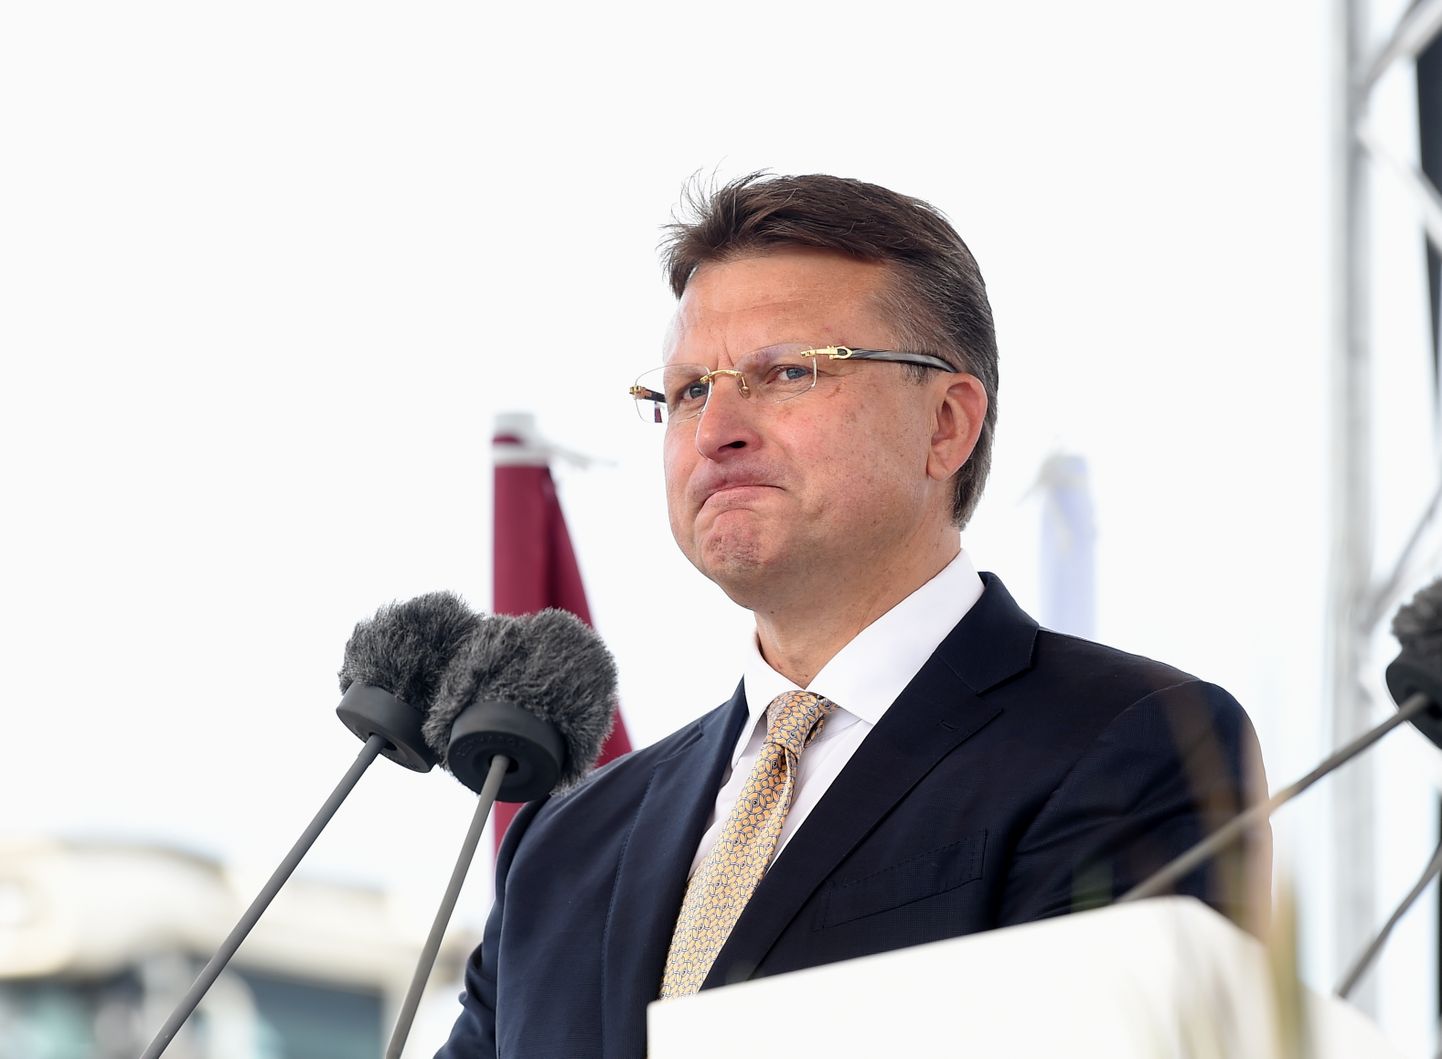 Politiķis Ainārs Šlesers partijas "Latvija pirmajā vietā" (LPV) dibināšanas kongresa laikā.